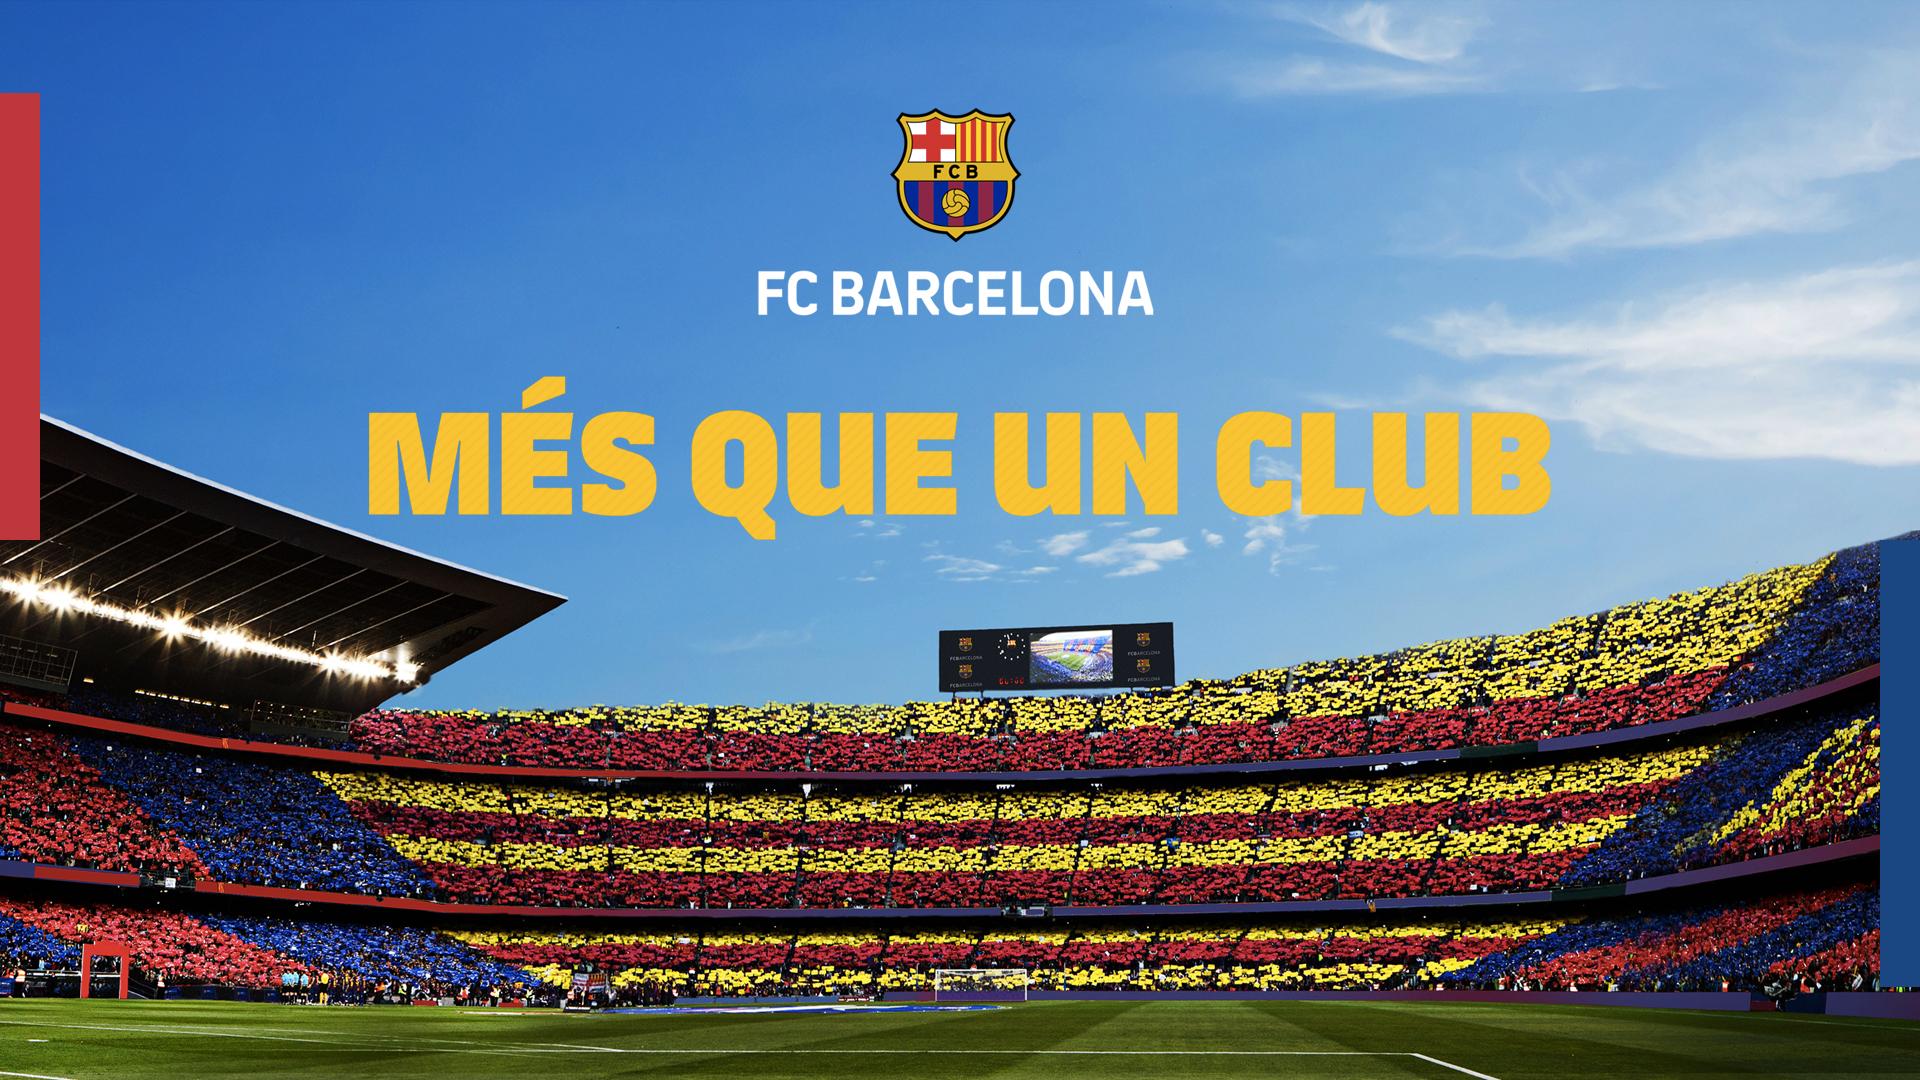 Download La Liga Fc Barcelona Art Wallpaper | Wallpapers.com